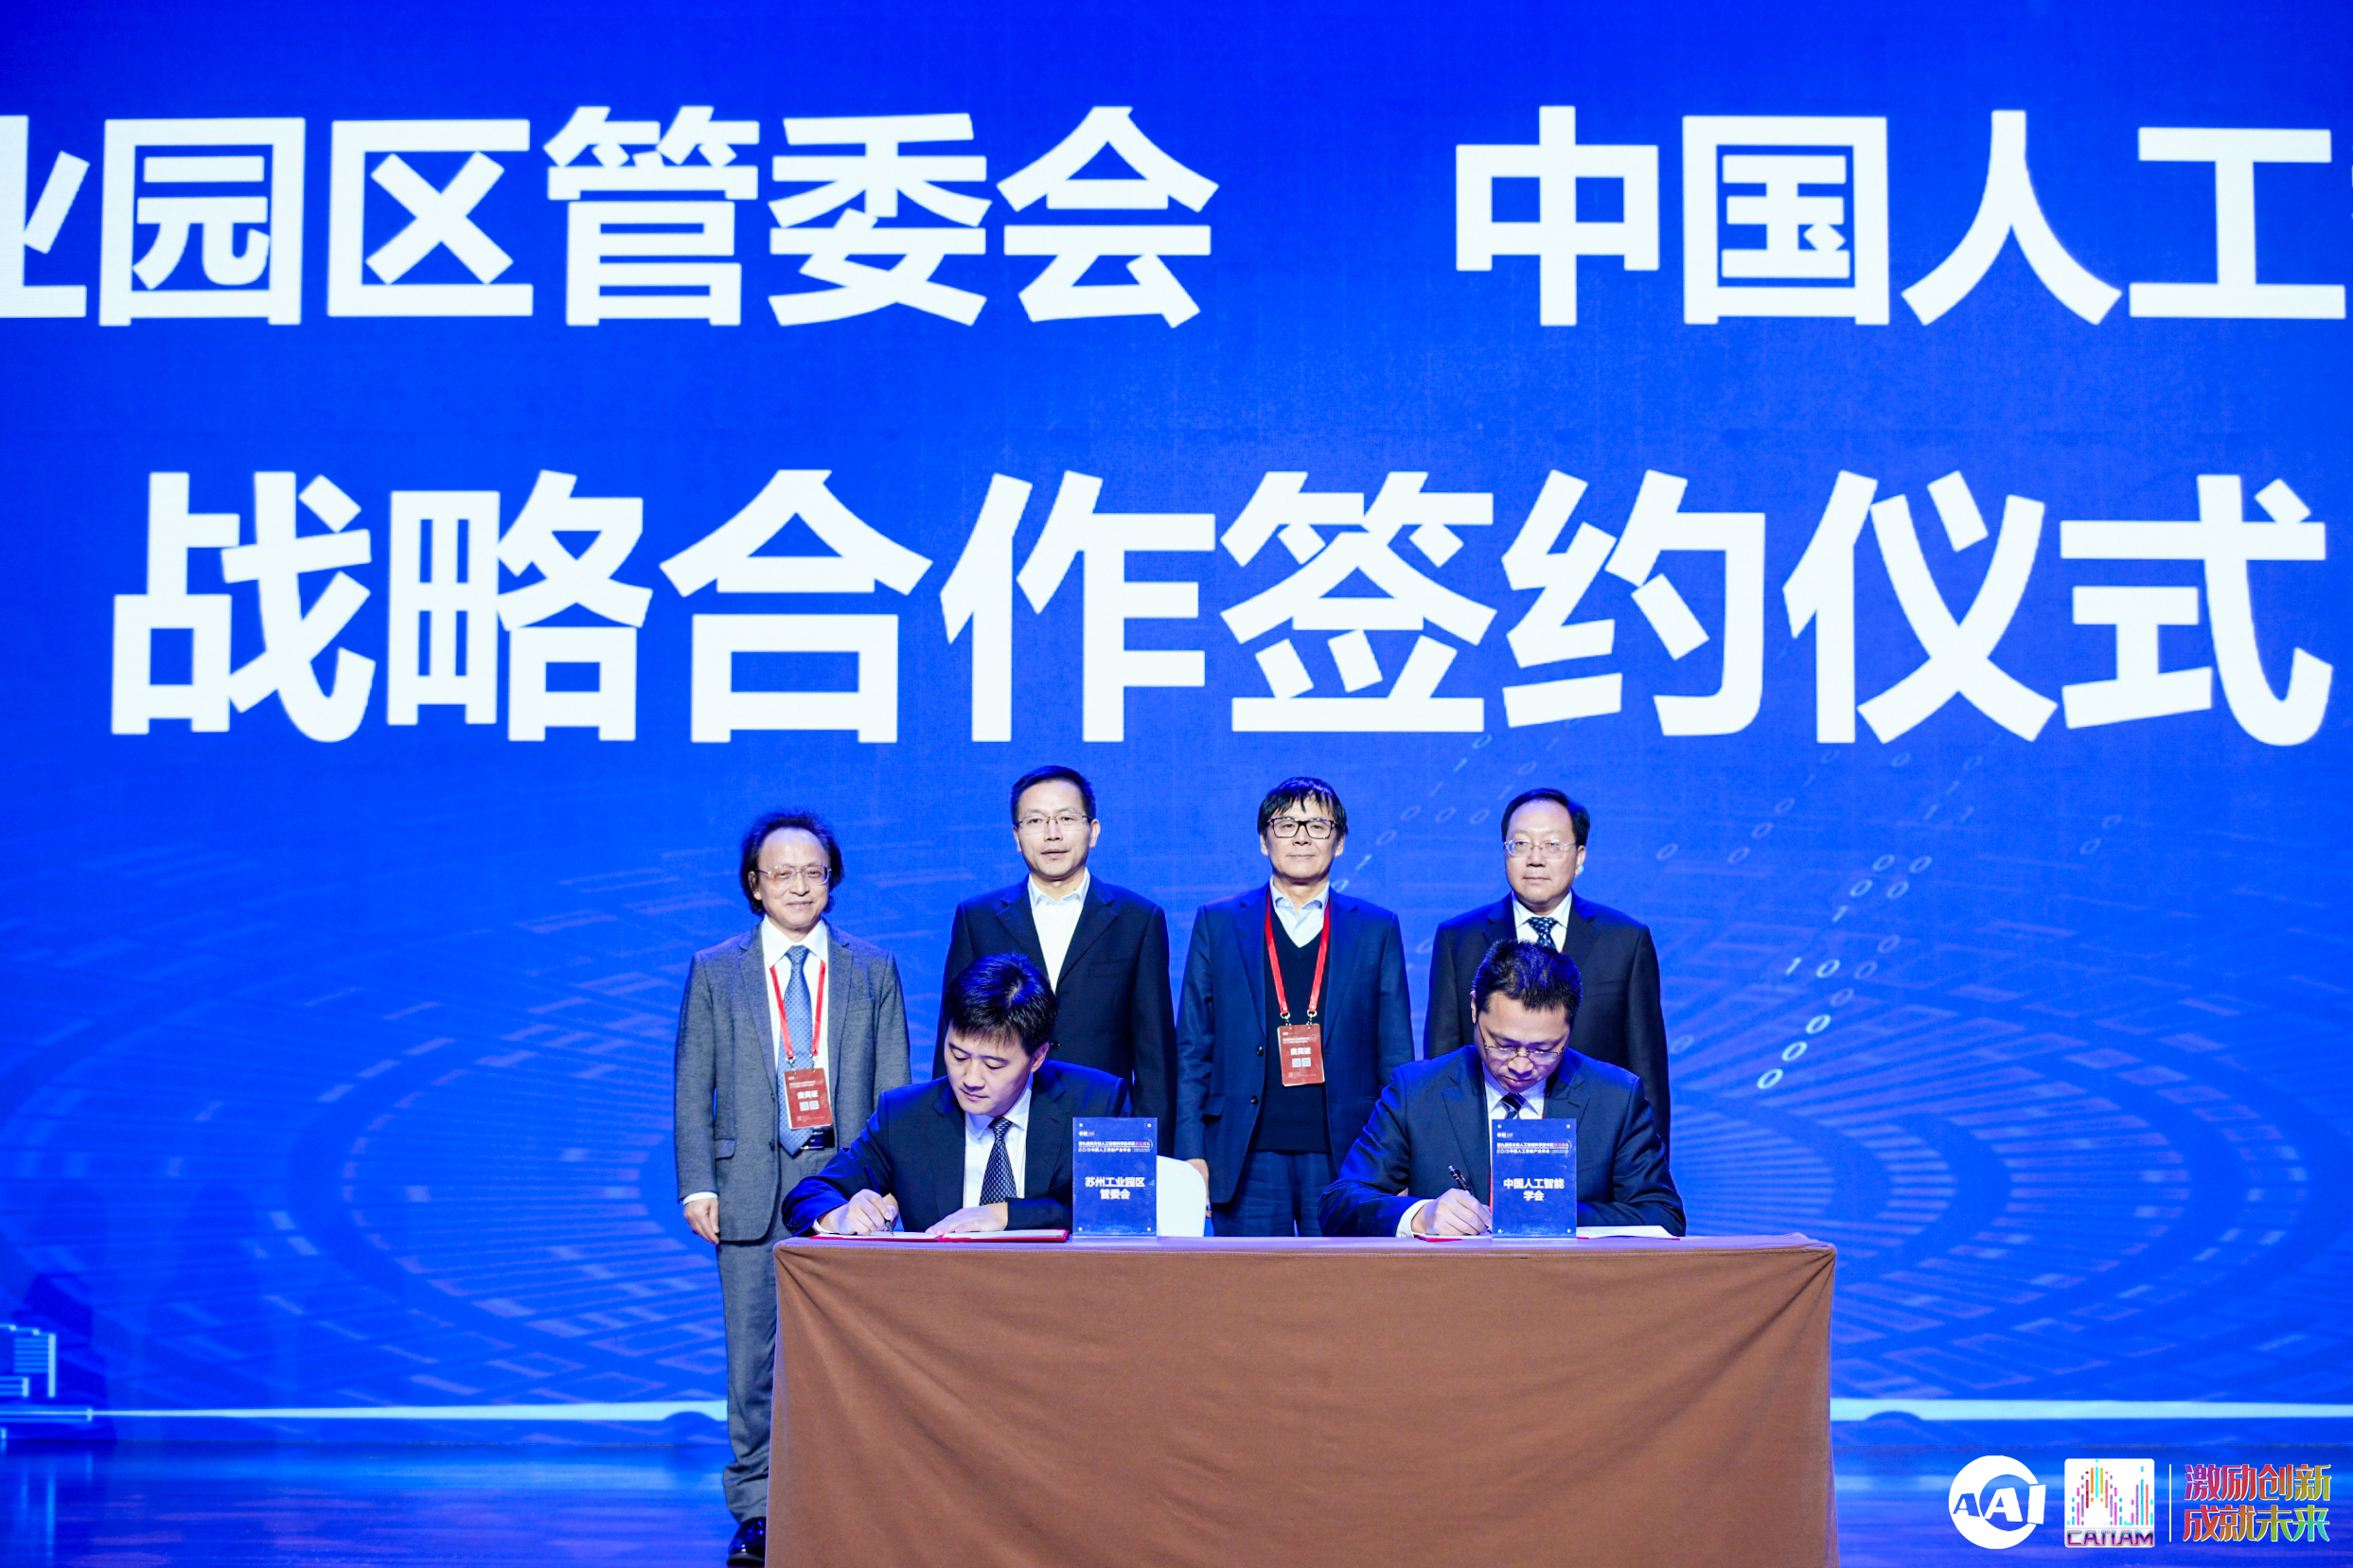  苏州工业园区管委会与中国人工智能学会战略合作签约仪式